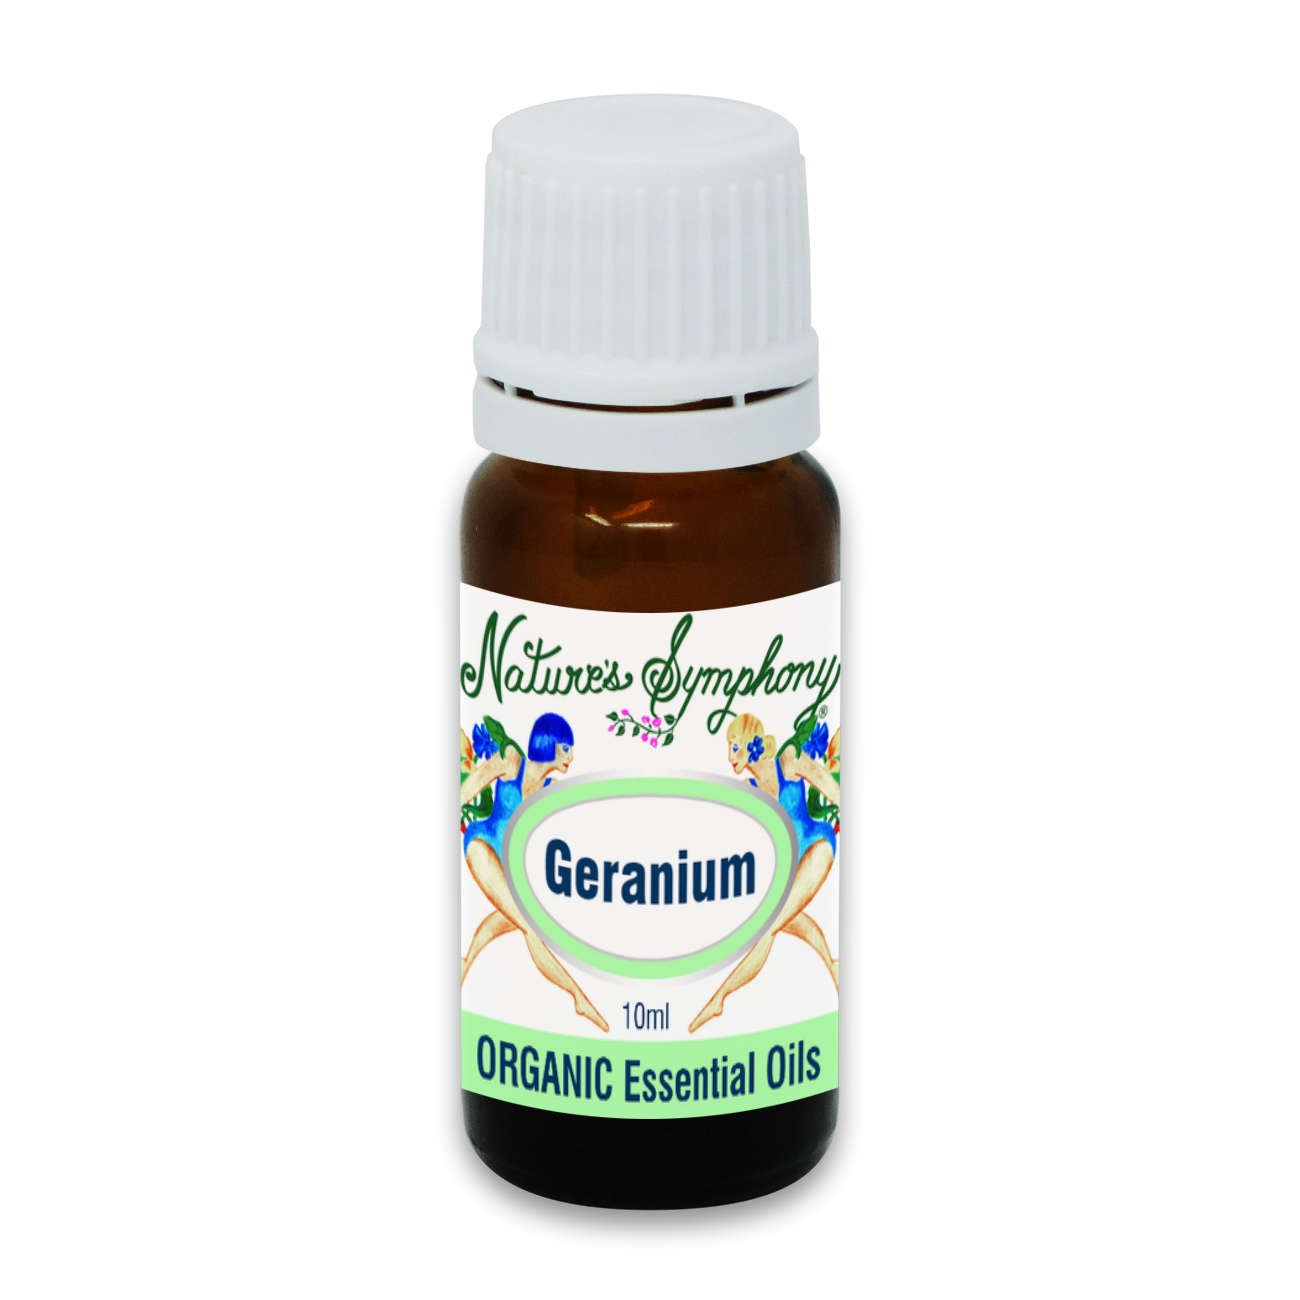 Geranium, Organic/Wildcrafted oil - 10ml